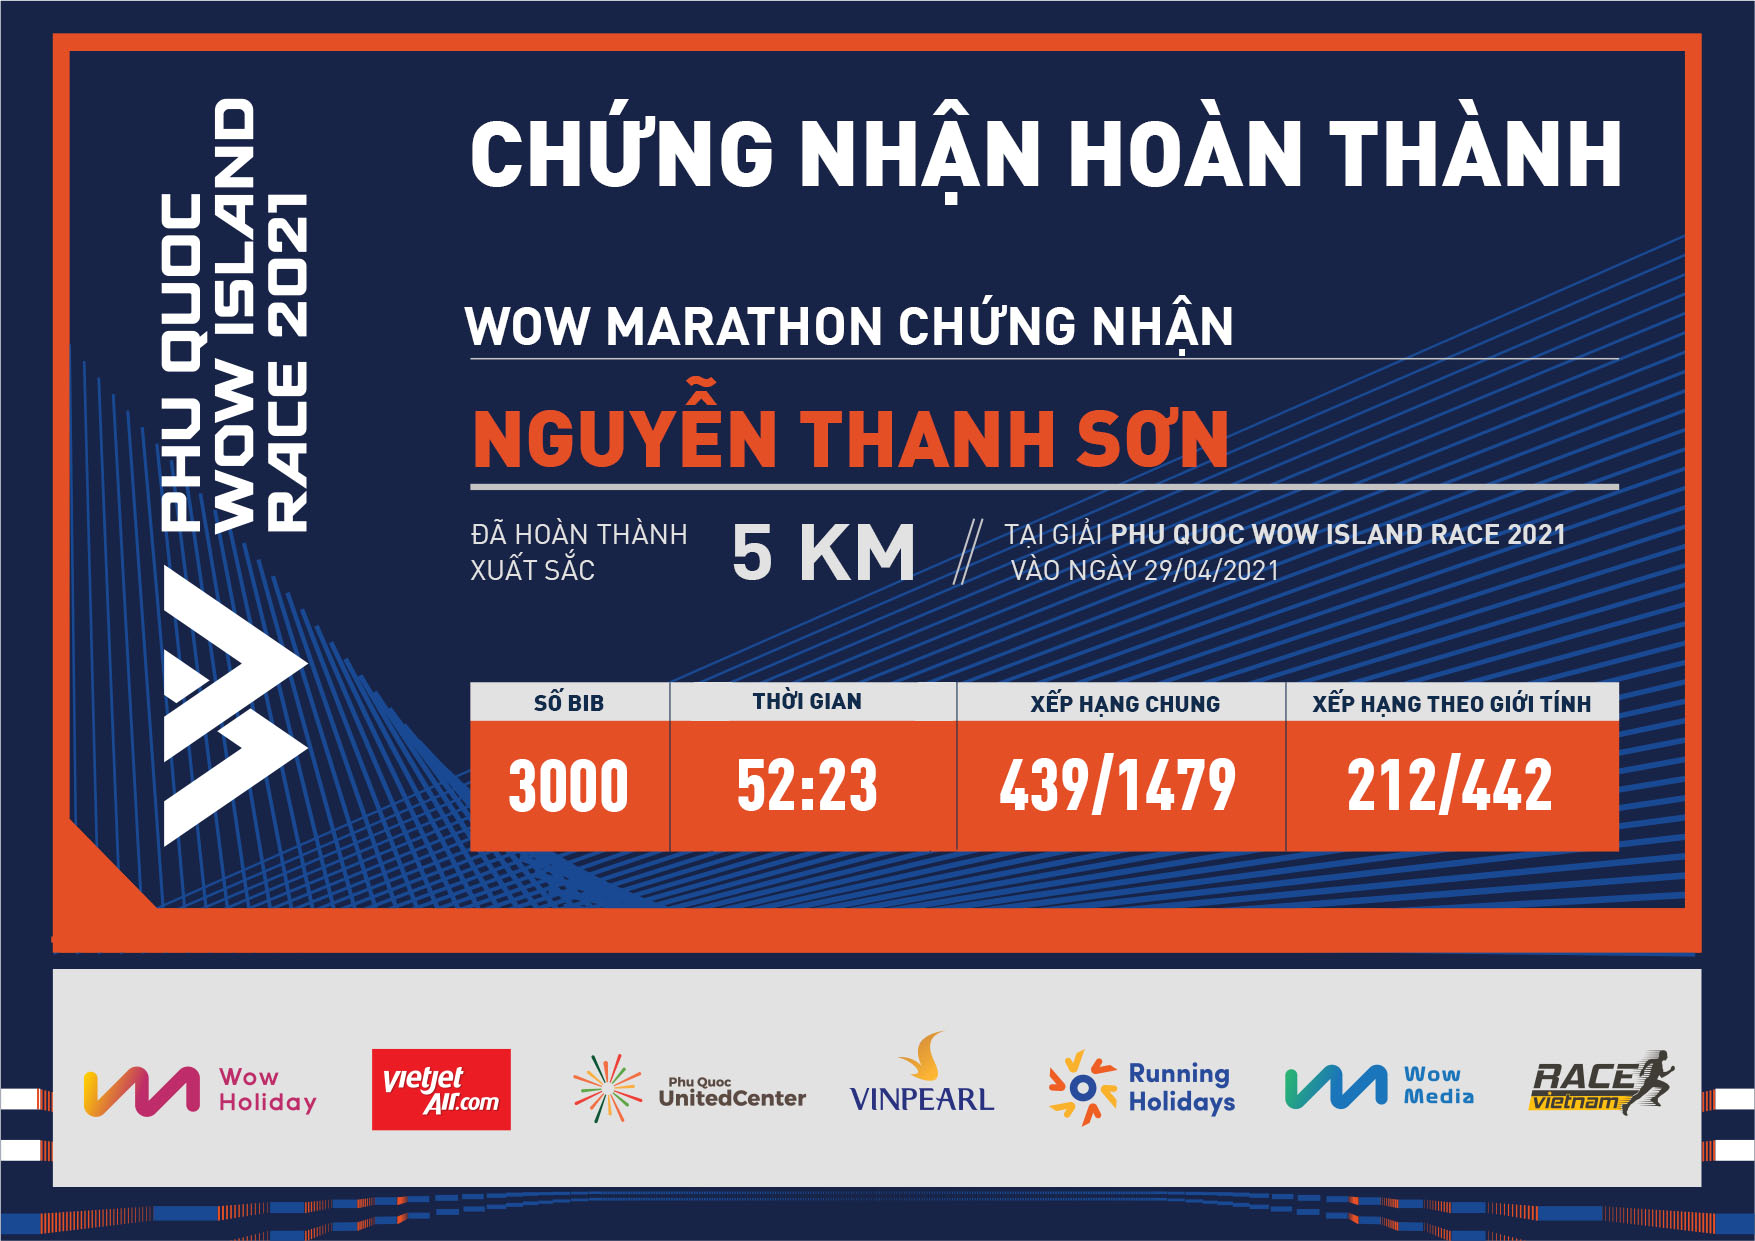 3000 - Nguyễn Thanh Sơn